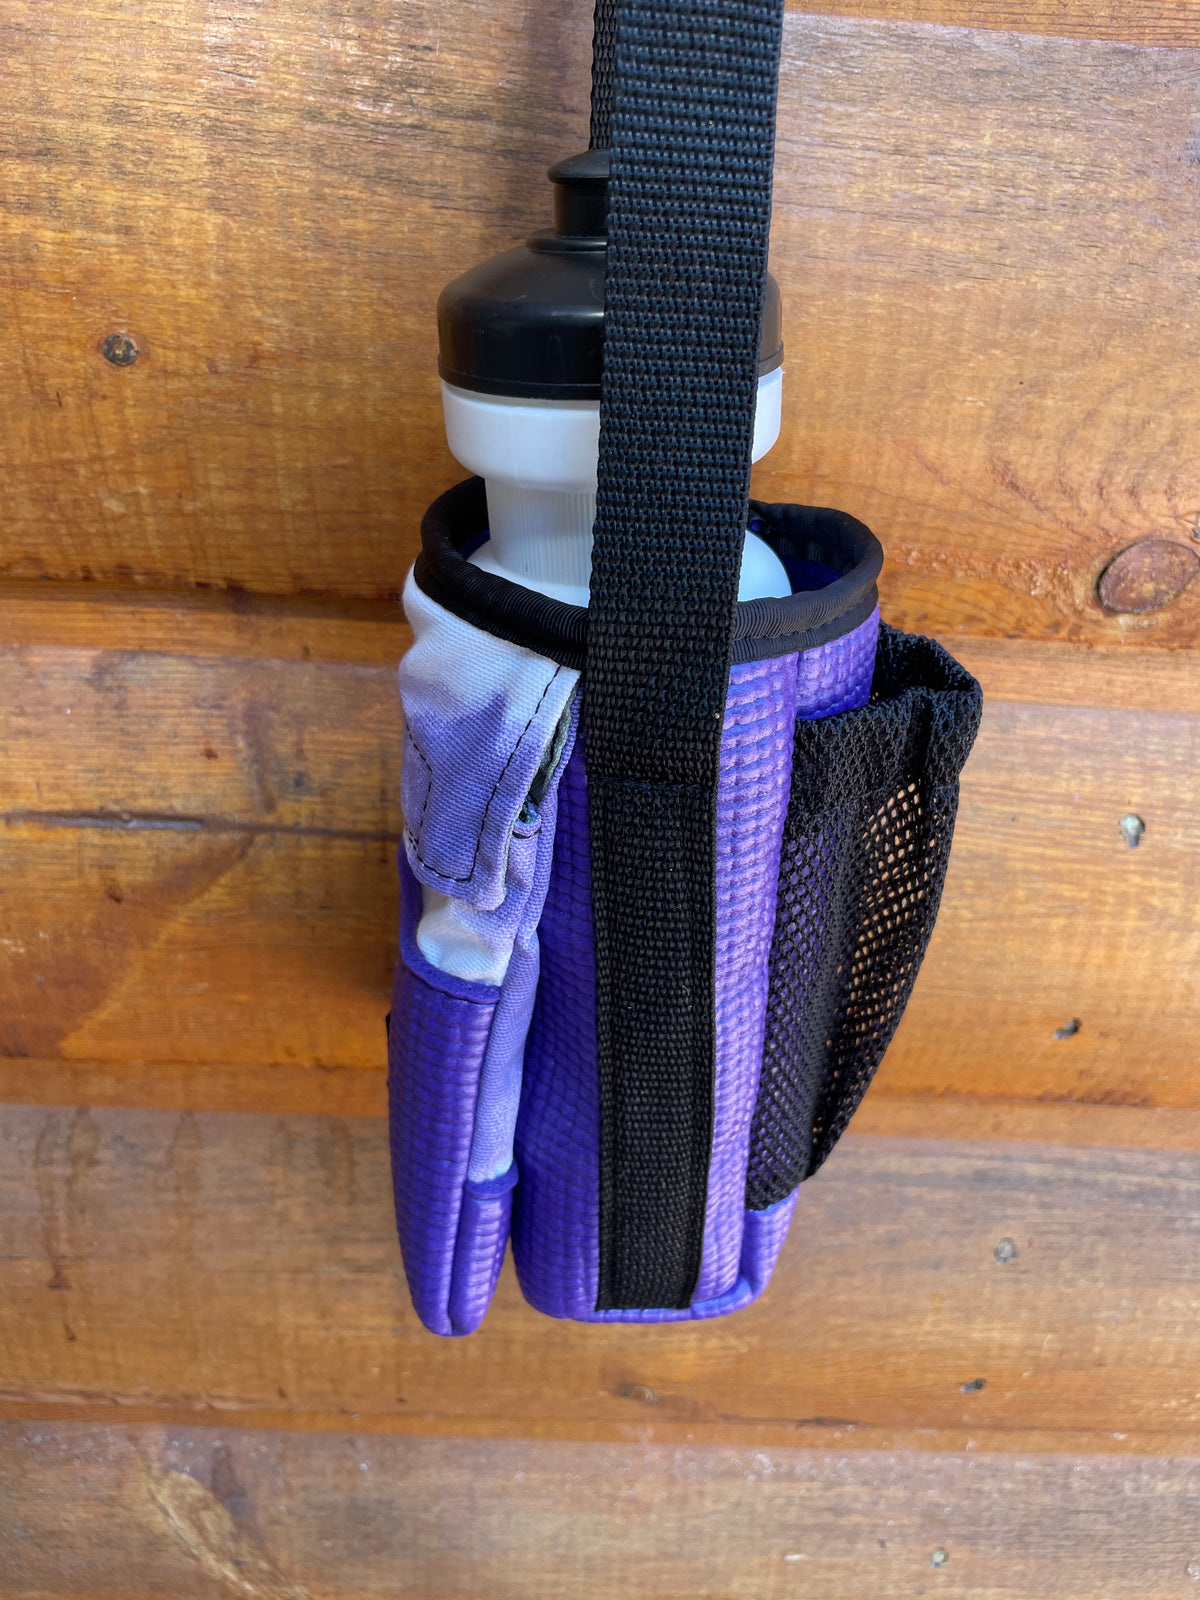 Ajax Purple Water Bottle Holder/Purse-Tye Dye